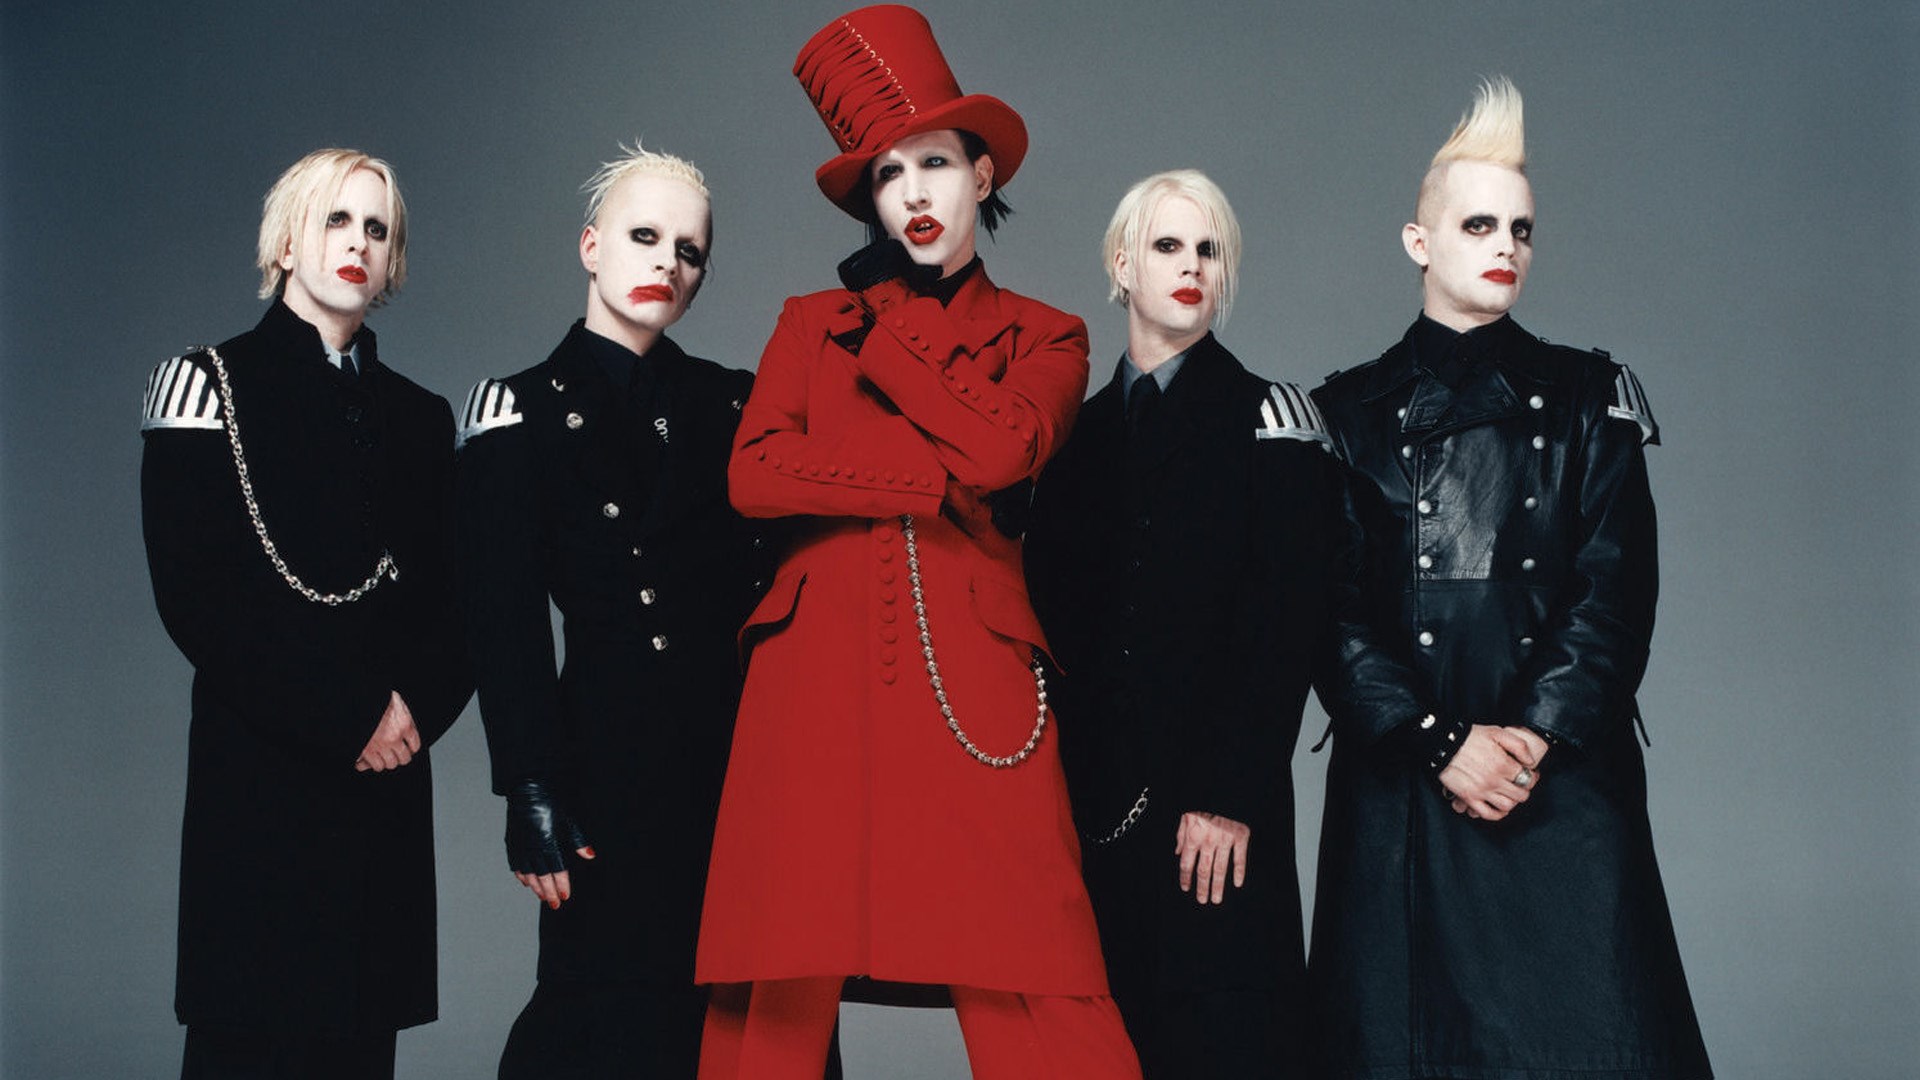 美国摇滚乐队Marilyn Manson (band)玛丽莲·曼森1994-2020年发行专辑合集[无损FLAC/13.3GB]百度云盘打包下载 影音资源 第2张